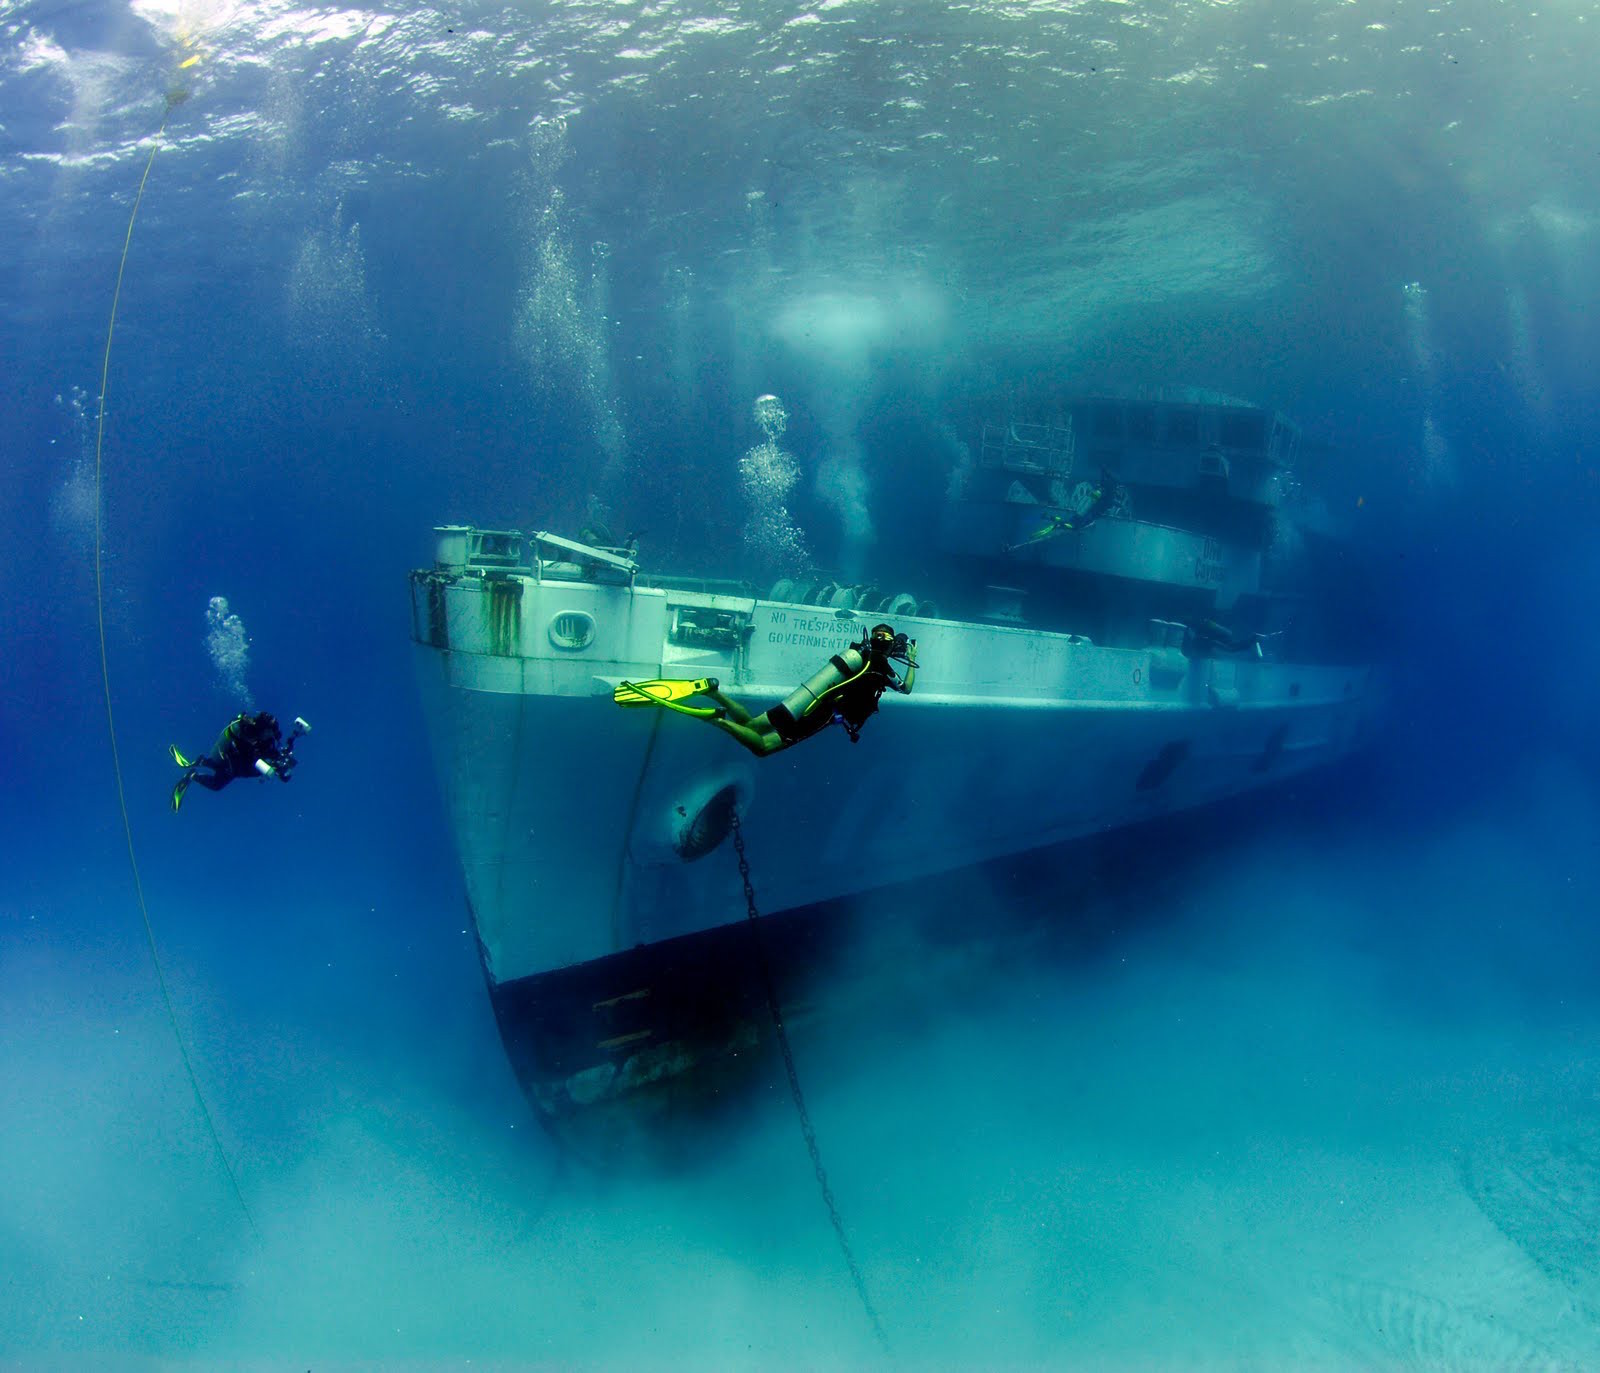 Судно USS Kittiwake, затопленное специально для дайверов на небольшой глубине, Каймановы острова. Моря и океаны, интересное, подводный мир